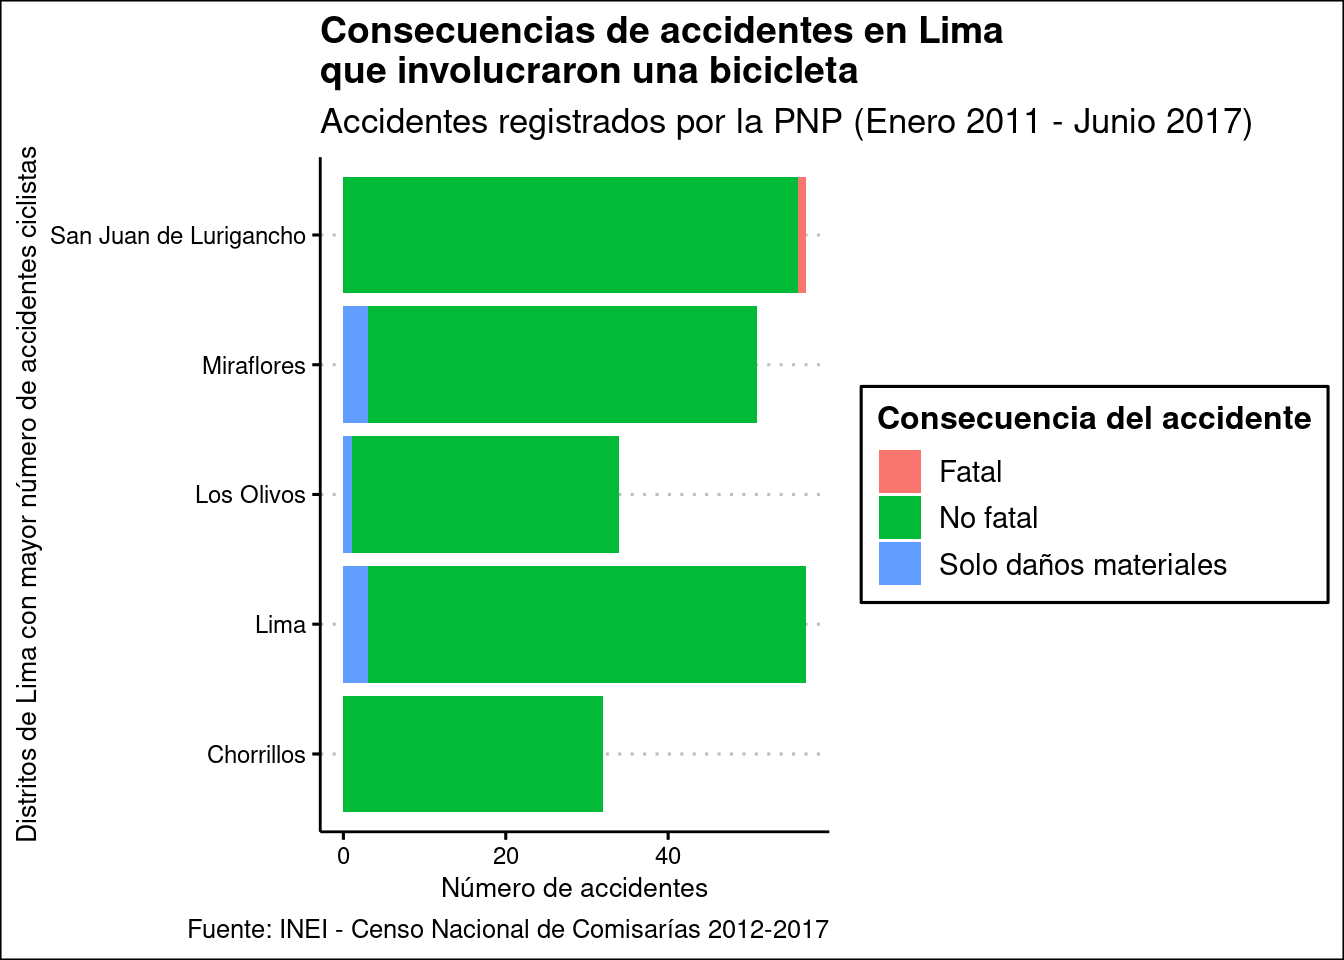 Cantidad de accidentes que involucraron una bicibleta en cinco distritos de Lima Metropolitana, por consecuencia del accidente